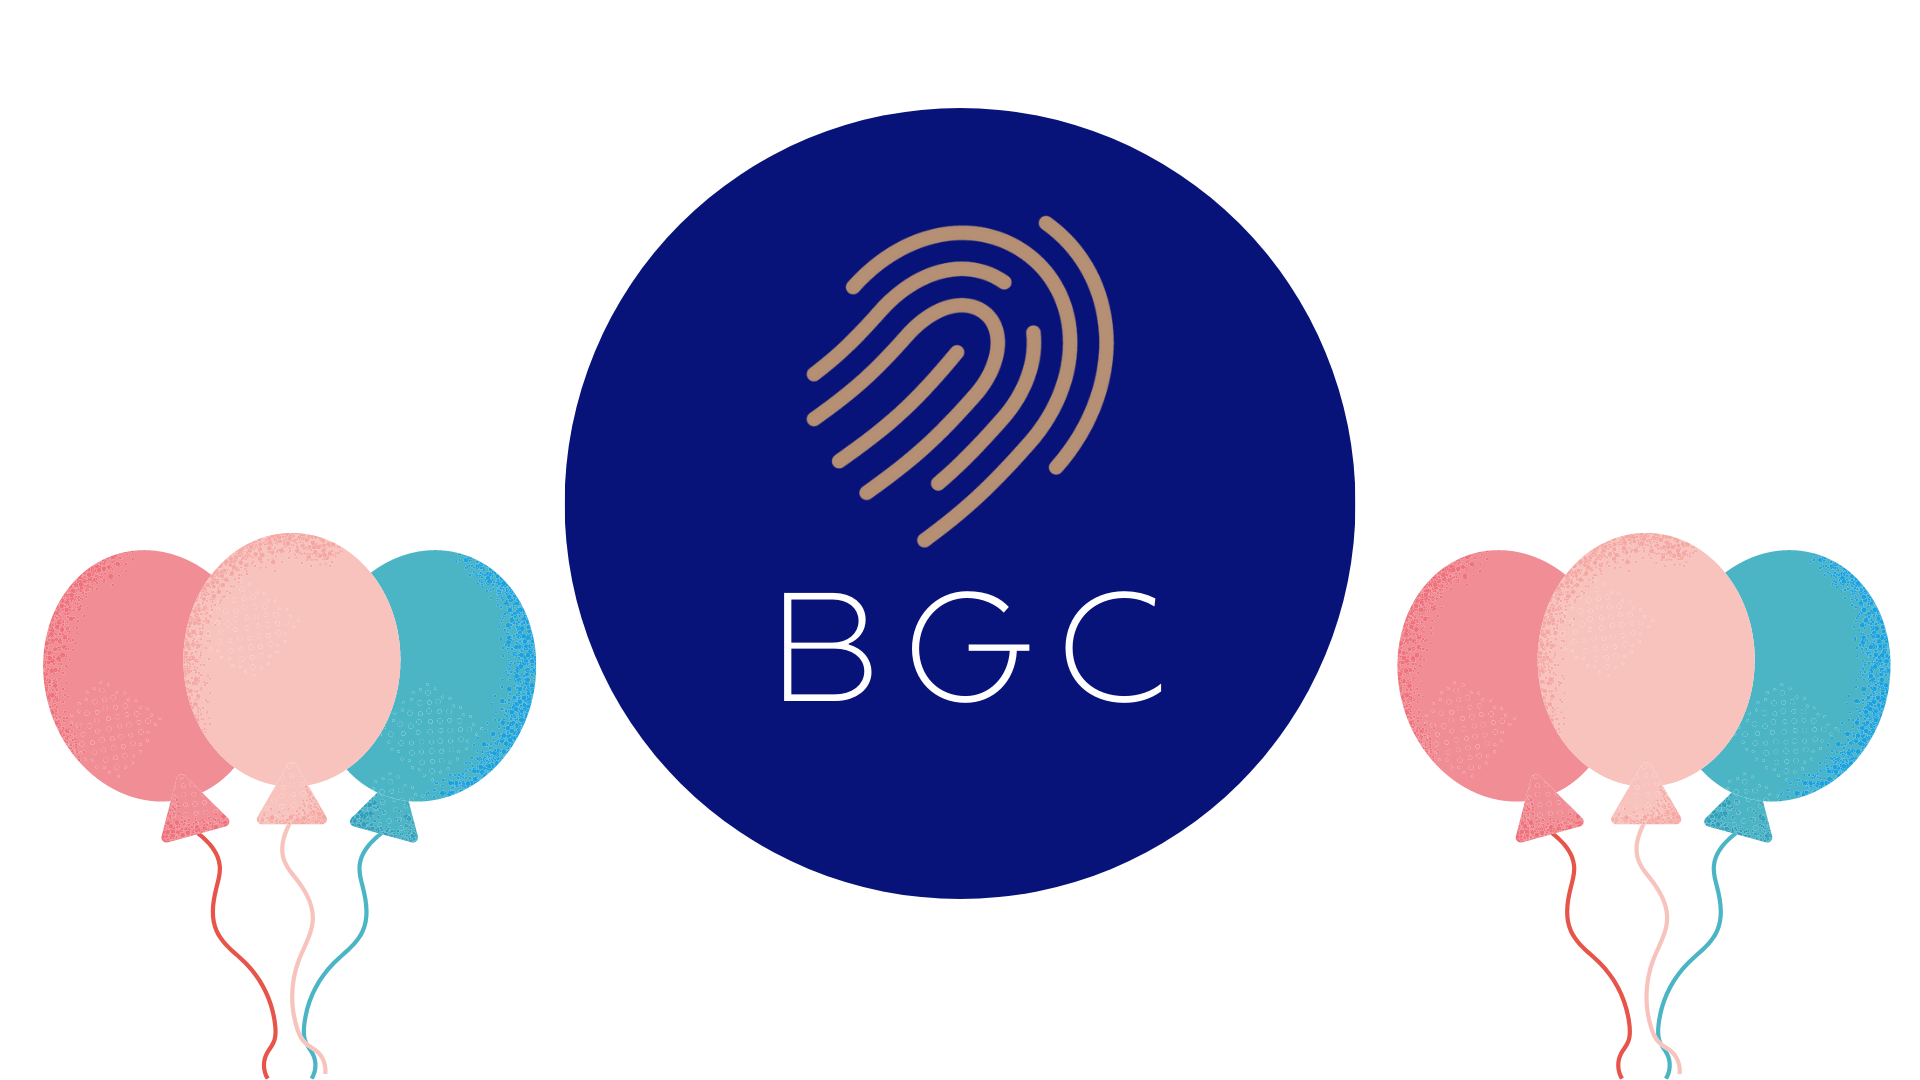 سبد BGC در انزایم تاسیس شد